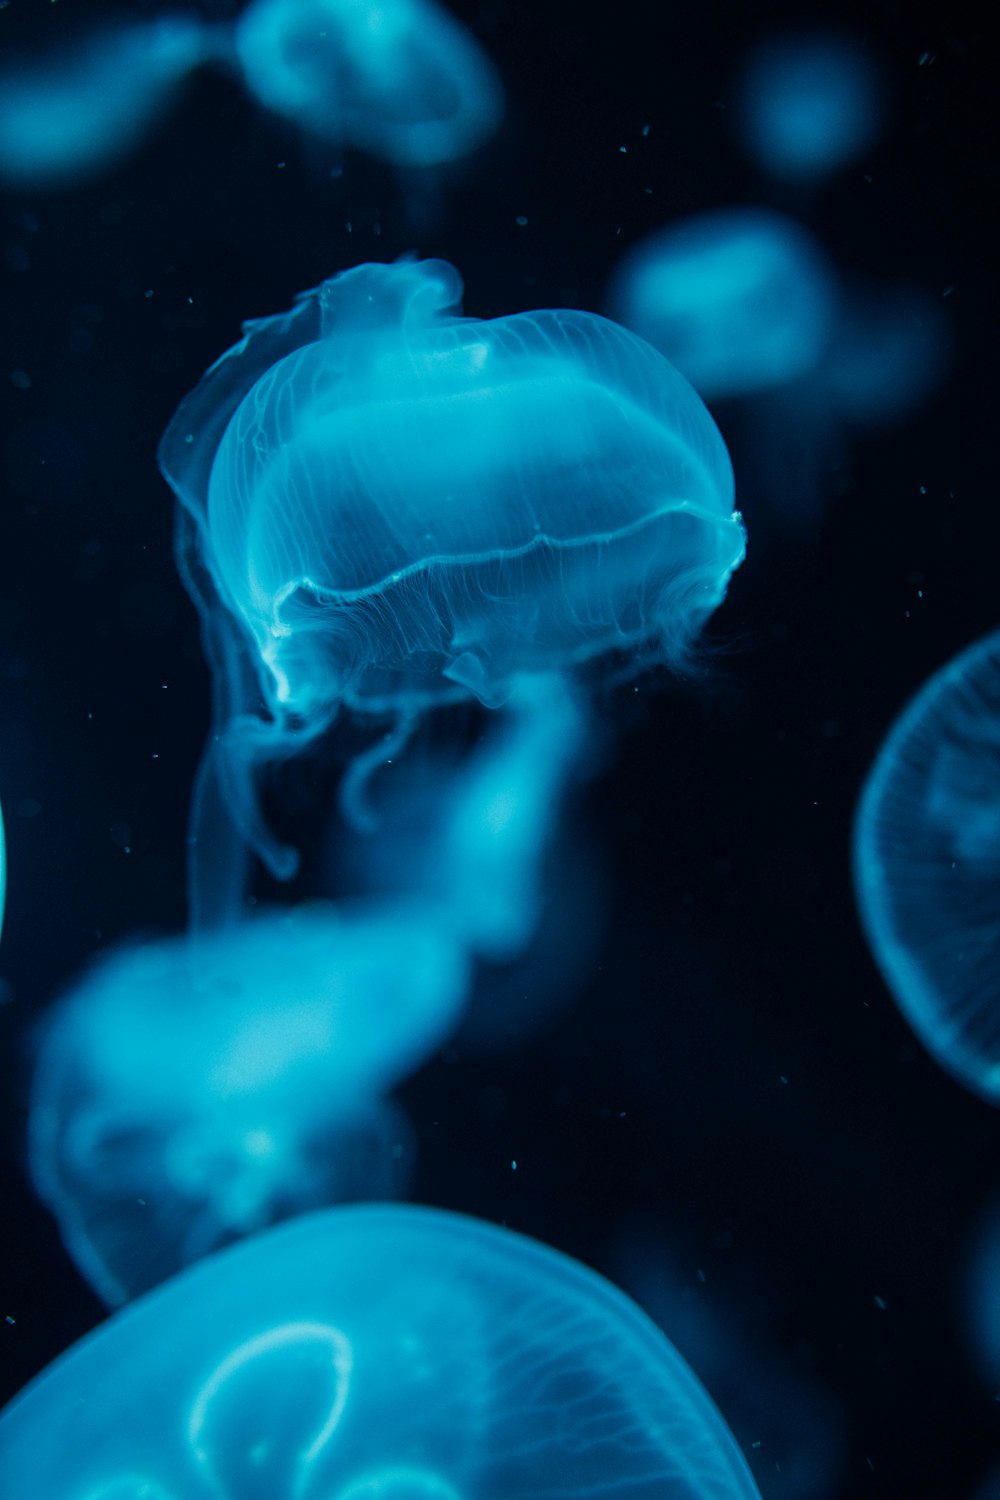 águas-vivas azuis na água em fotografia de perto